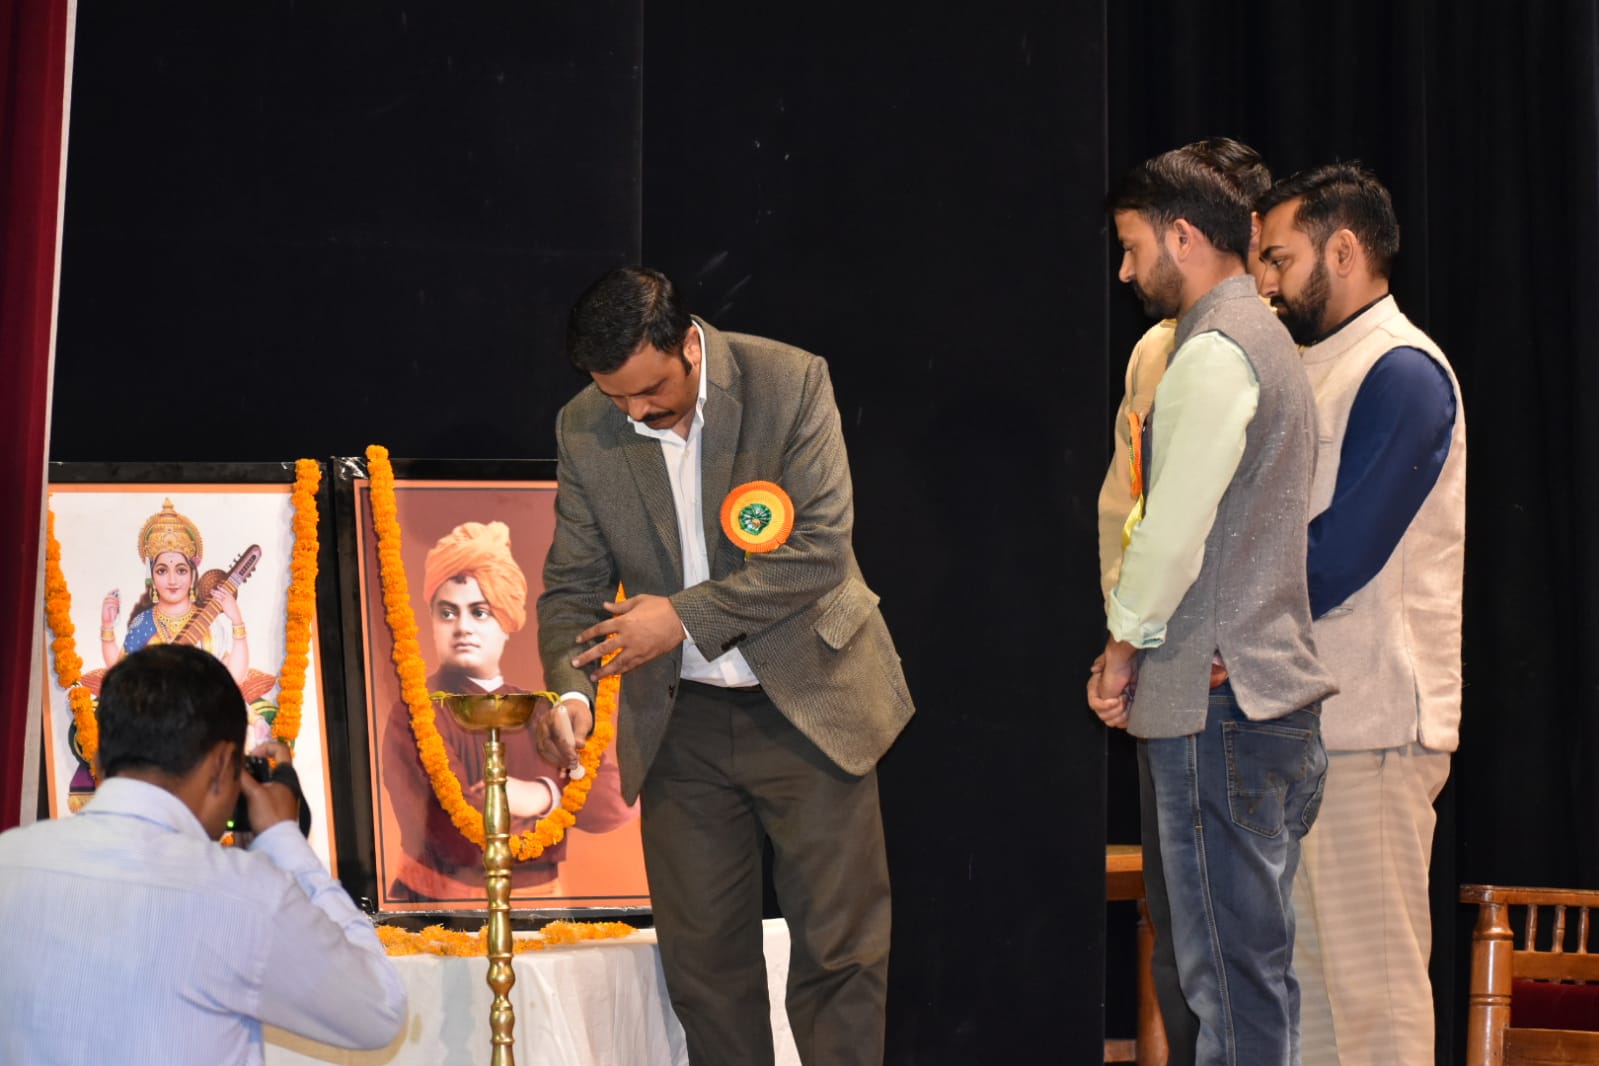 अखिल भारतीय विद्यार्थी परिषद ने मनाया अपना 75वां स्थापना दिवस